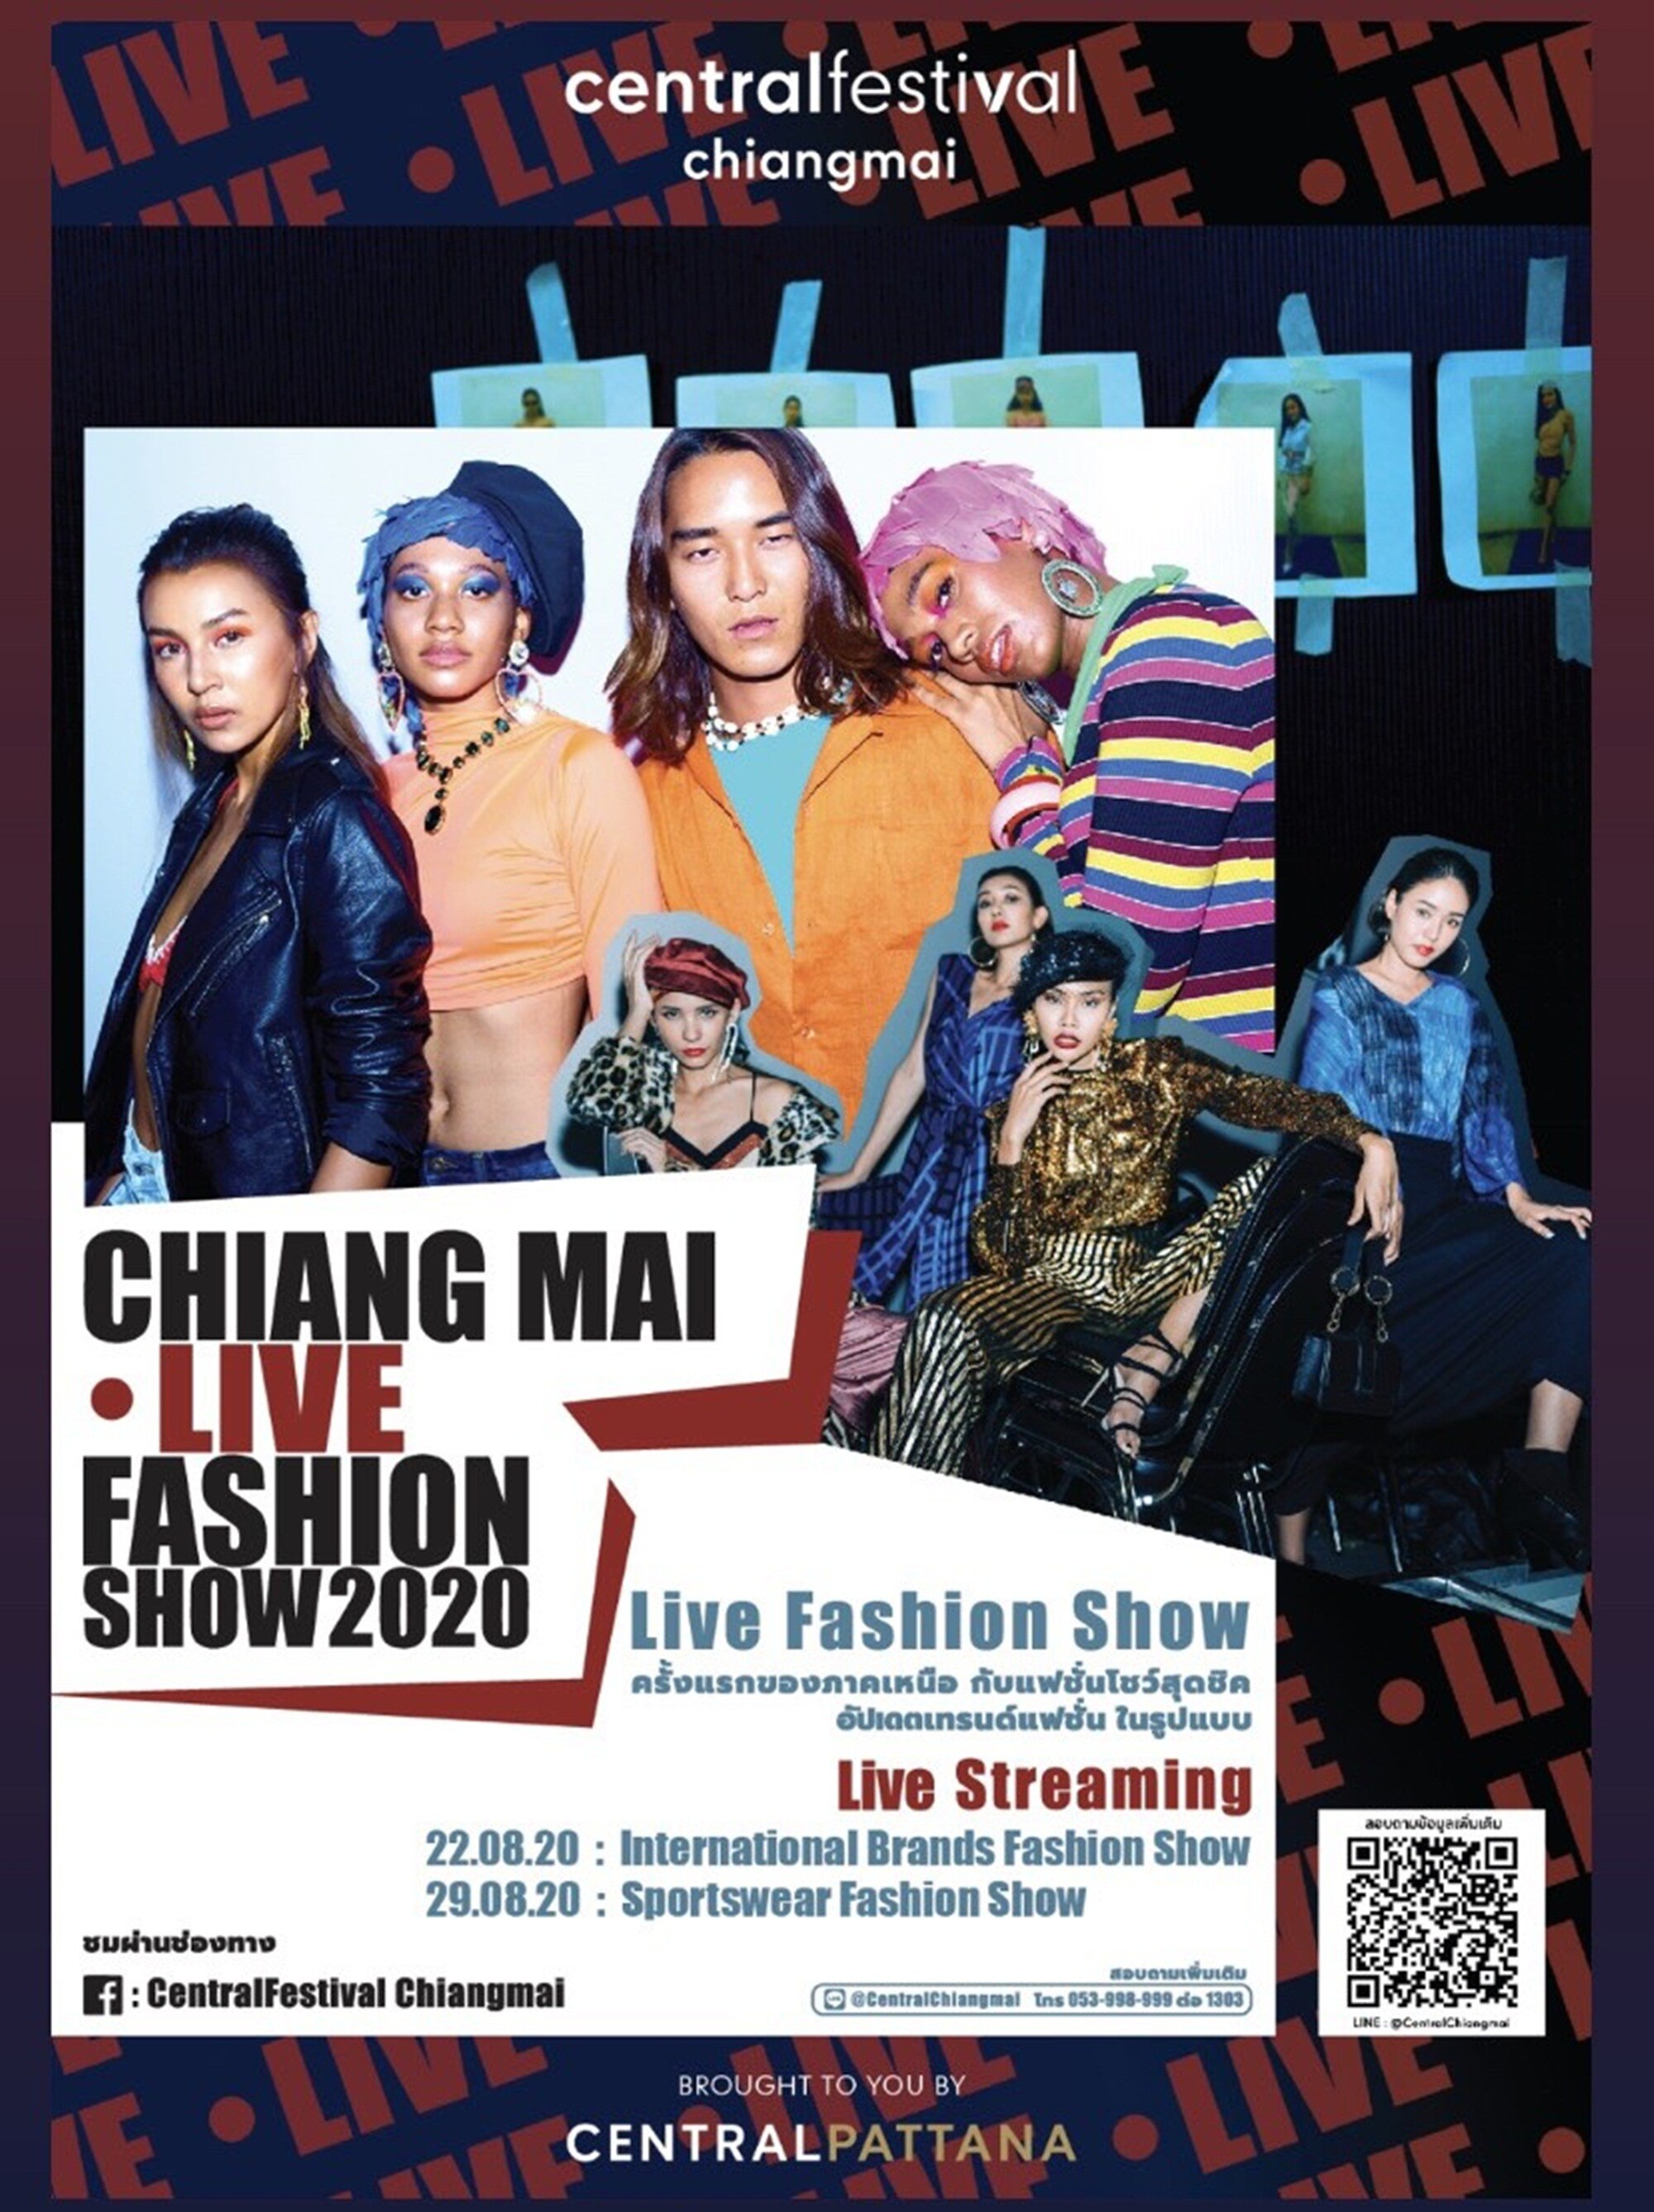 “เซ็นทรัลเฟสติวัล เชียงใหม่” เปิดรันเวย์แบบ New normal จัด 'Chiangmai Live Fashion Show 2020’ ครั้งแรกของภาคเหนือกับแฟชั่นโชว์ในรูปแบบ Live Streaming